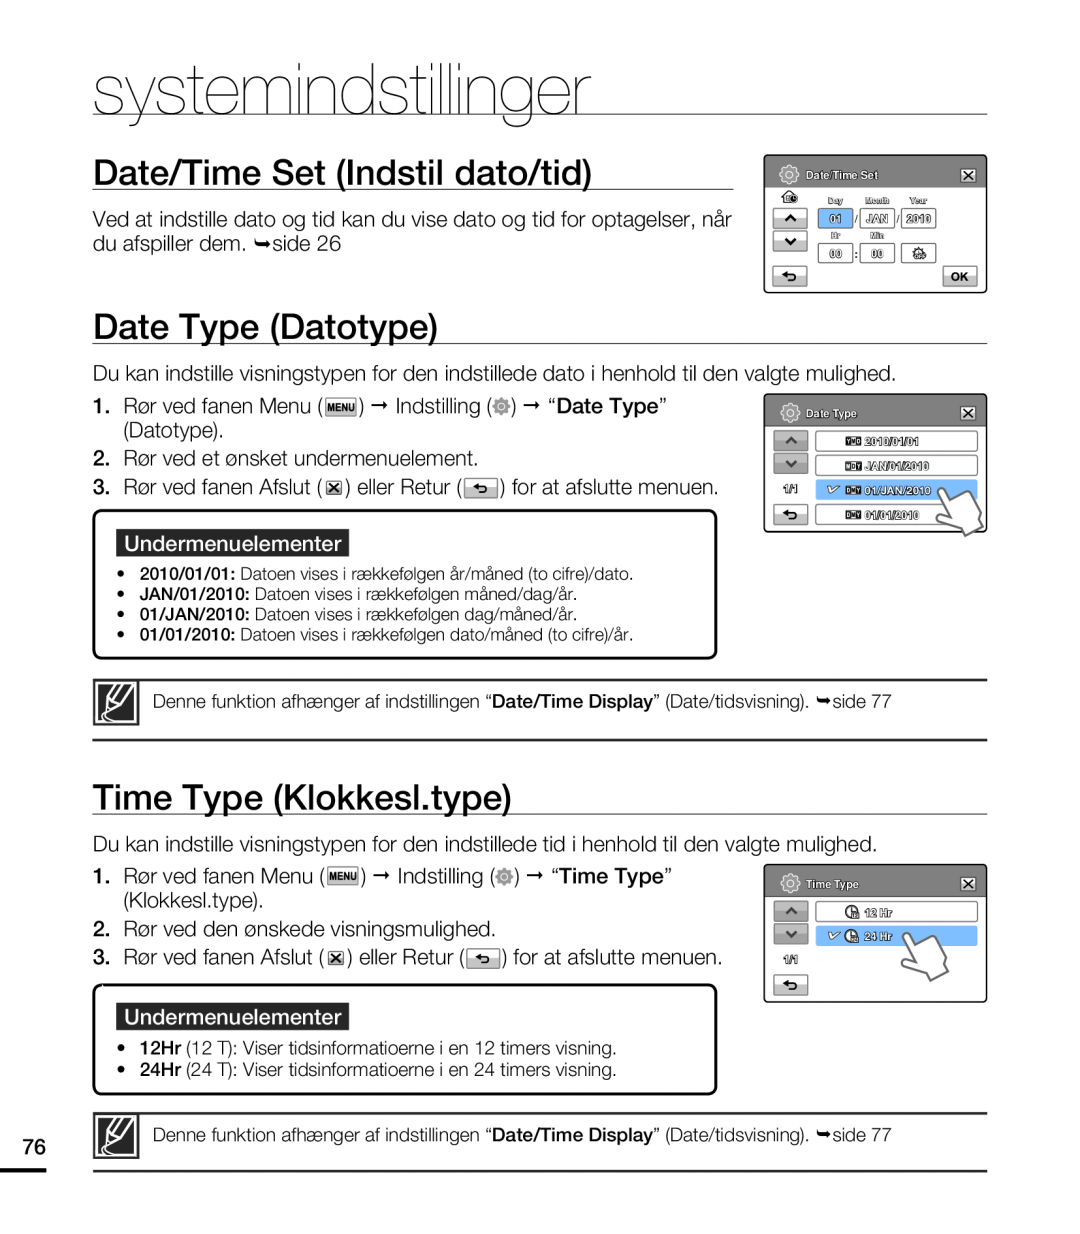 Samsung HMX-T10WP/EDC Date/Time Set Indstil dato/tid, Date Type Datotype, Time Type Klokkesl.type, systemindstillinger 